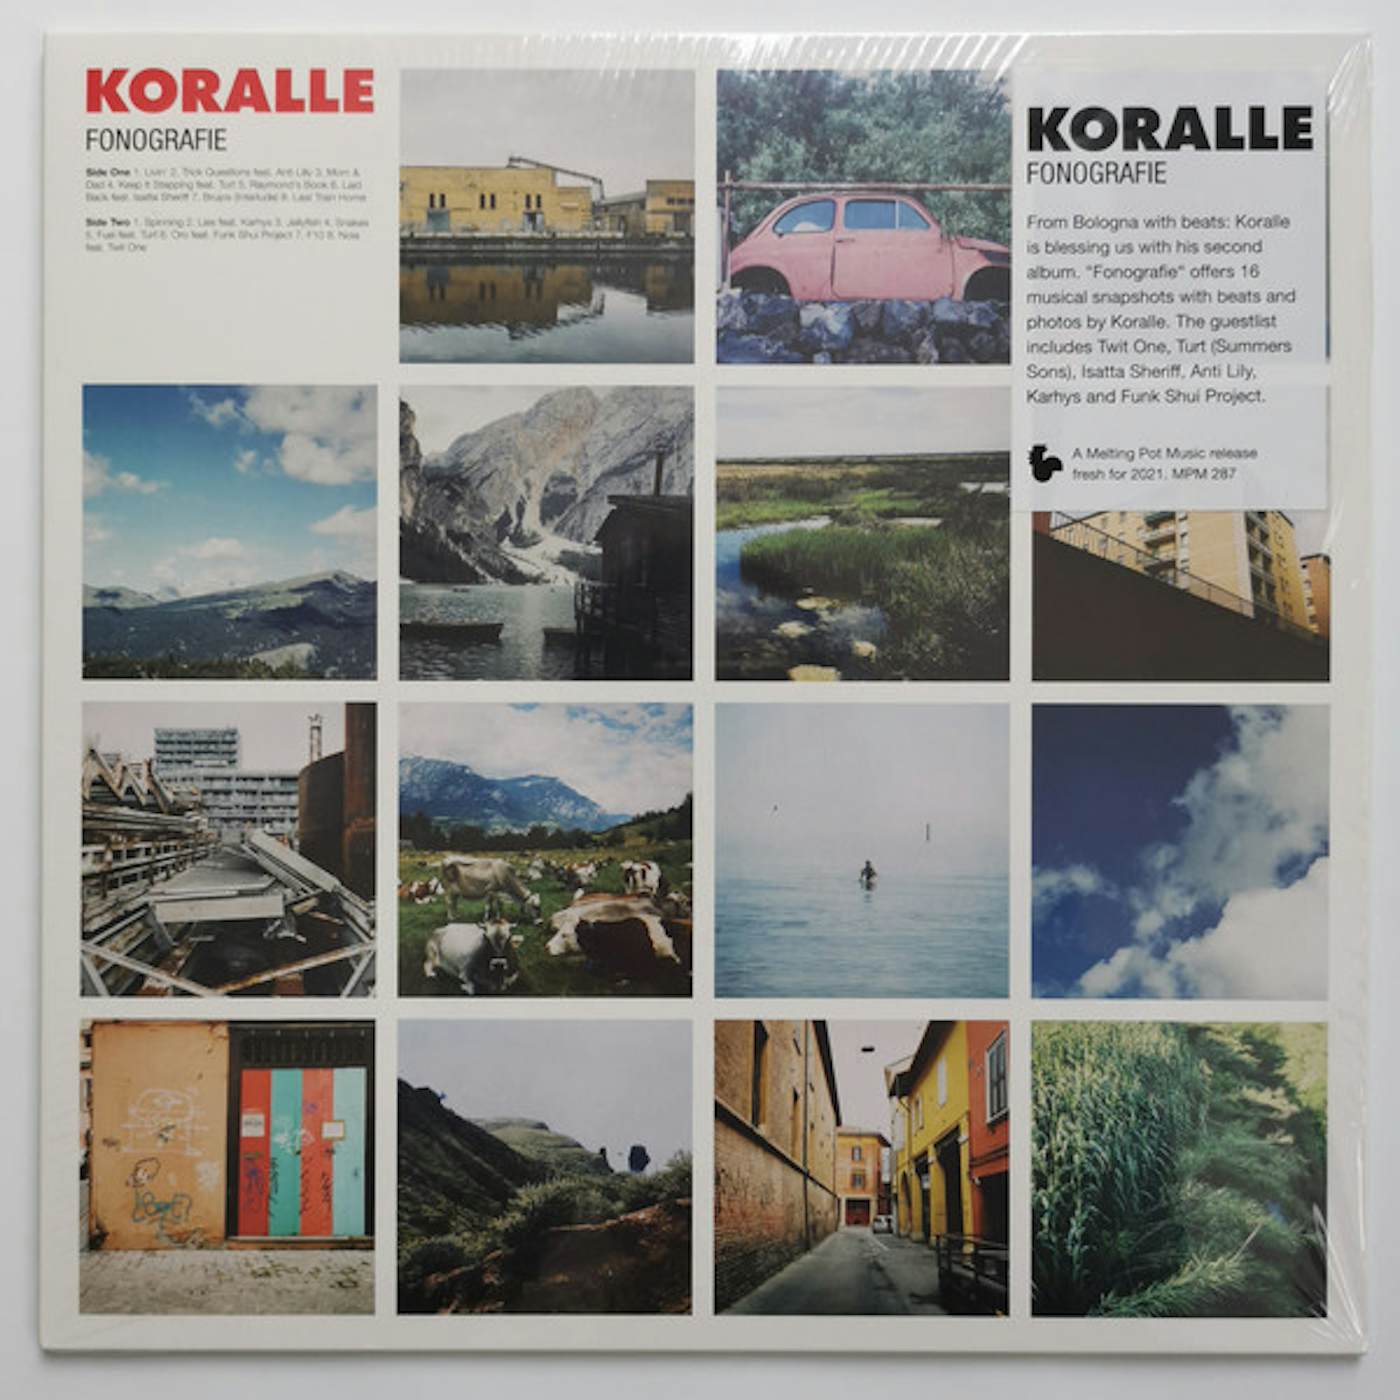 Koralle Fonografie Vinyl Record